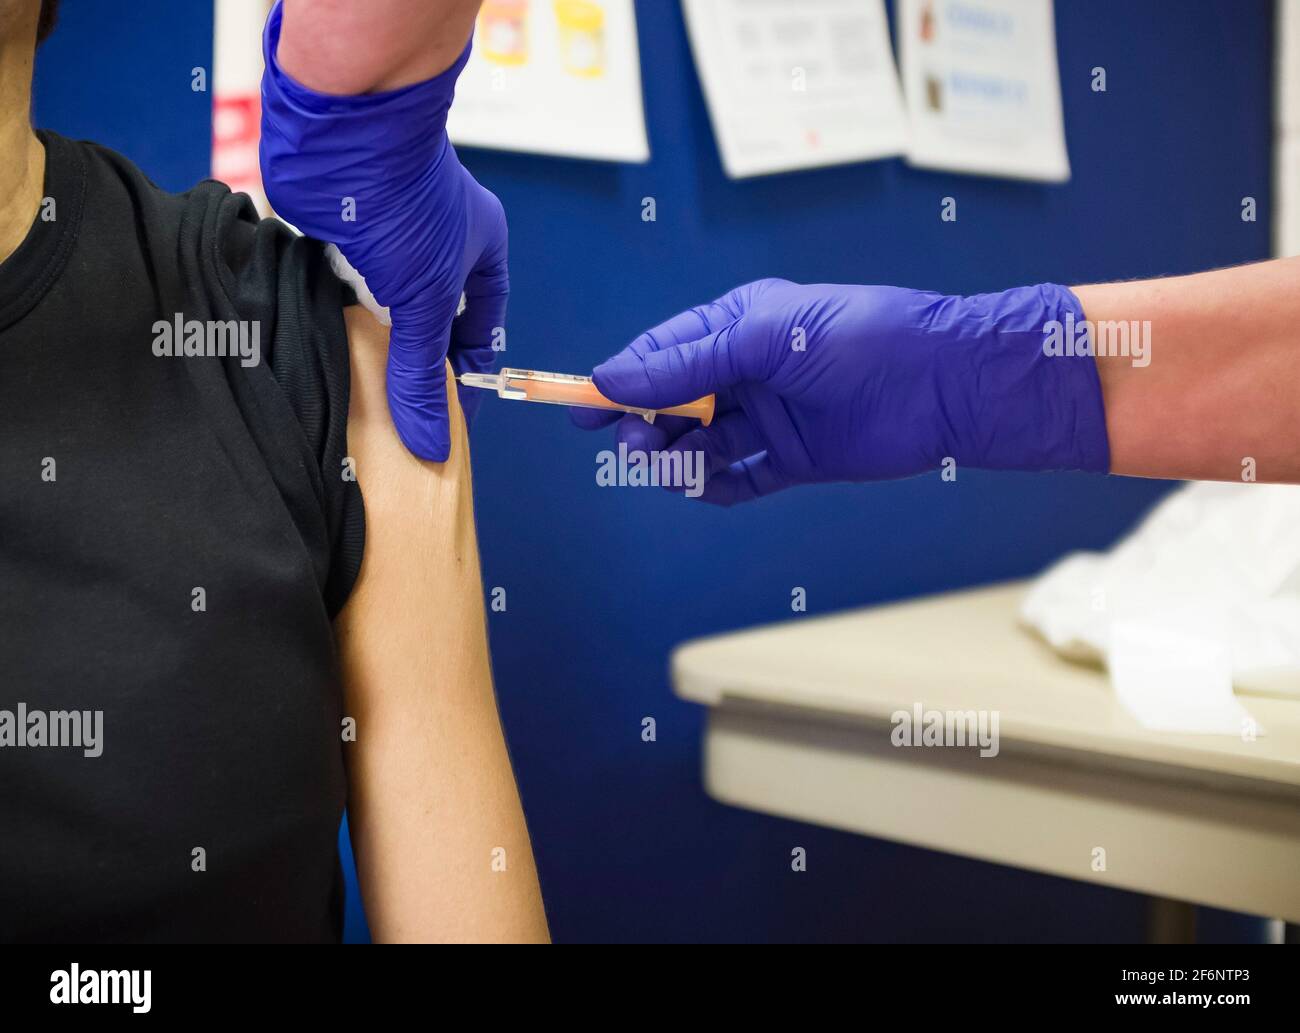 Nahaufnahme einer britisch-asiatischen Frau, die eine Injektion mit Arm, Grippe, Influenza- oder Covid-19-Impfstoff erhält, Großbritannien Stockfoto